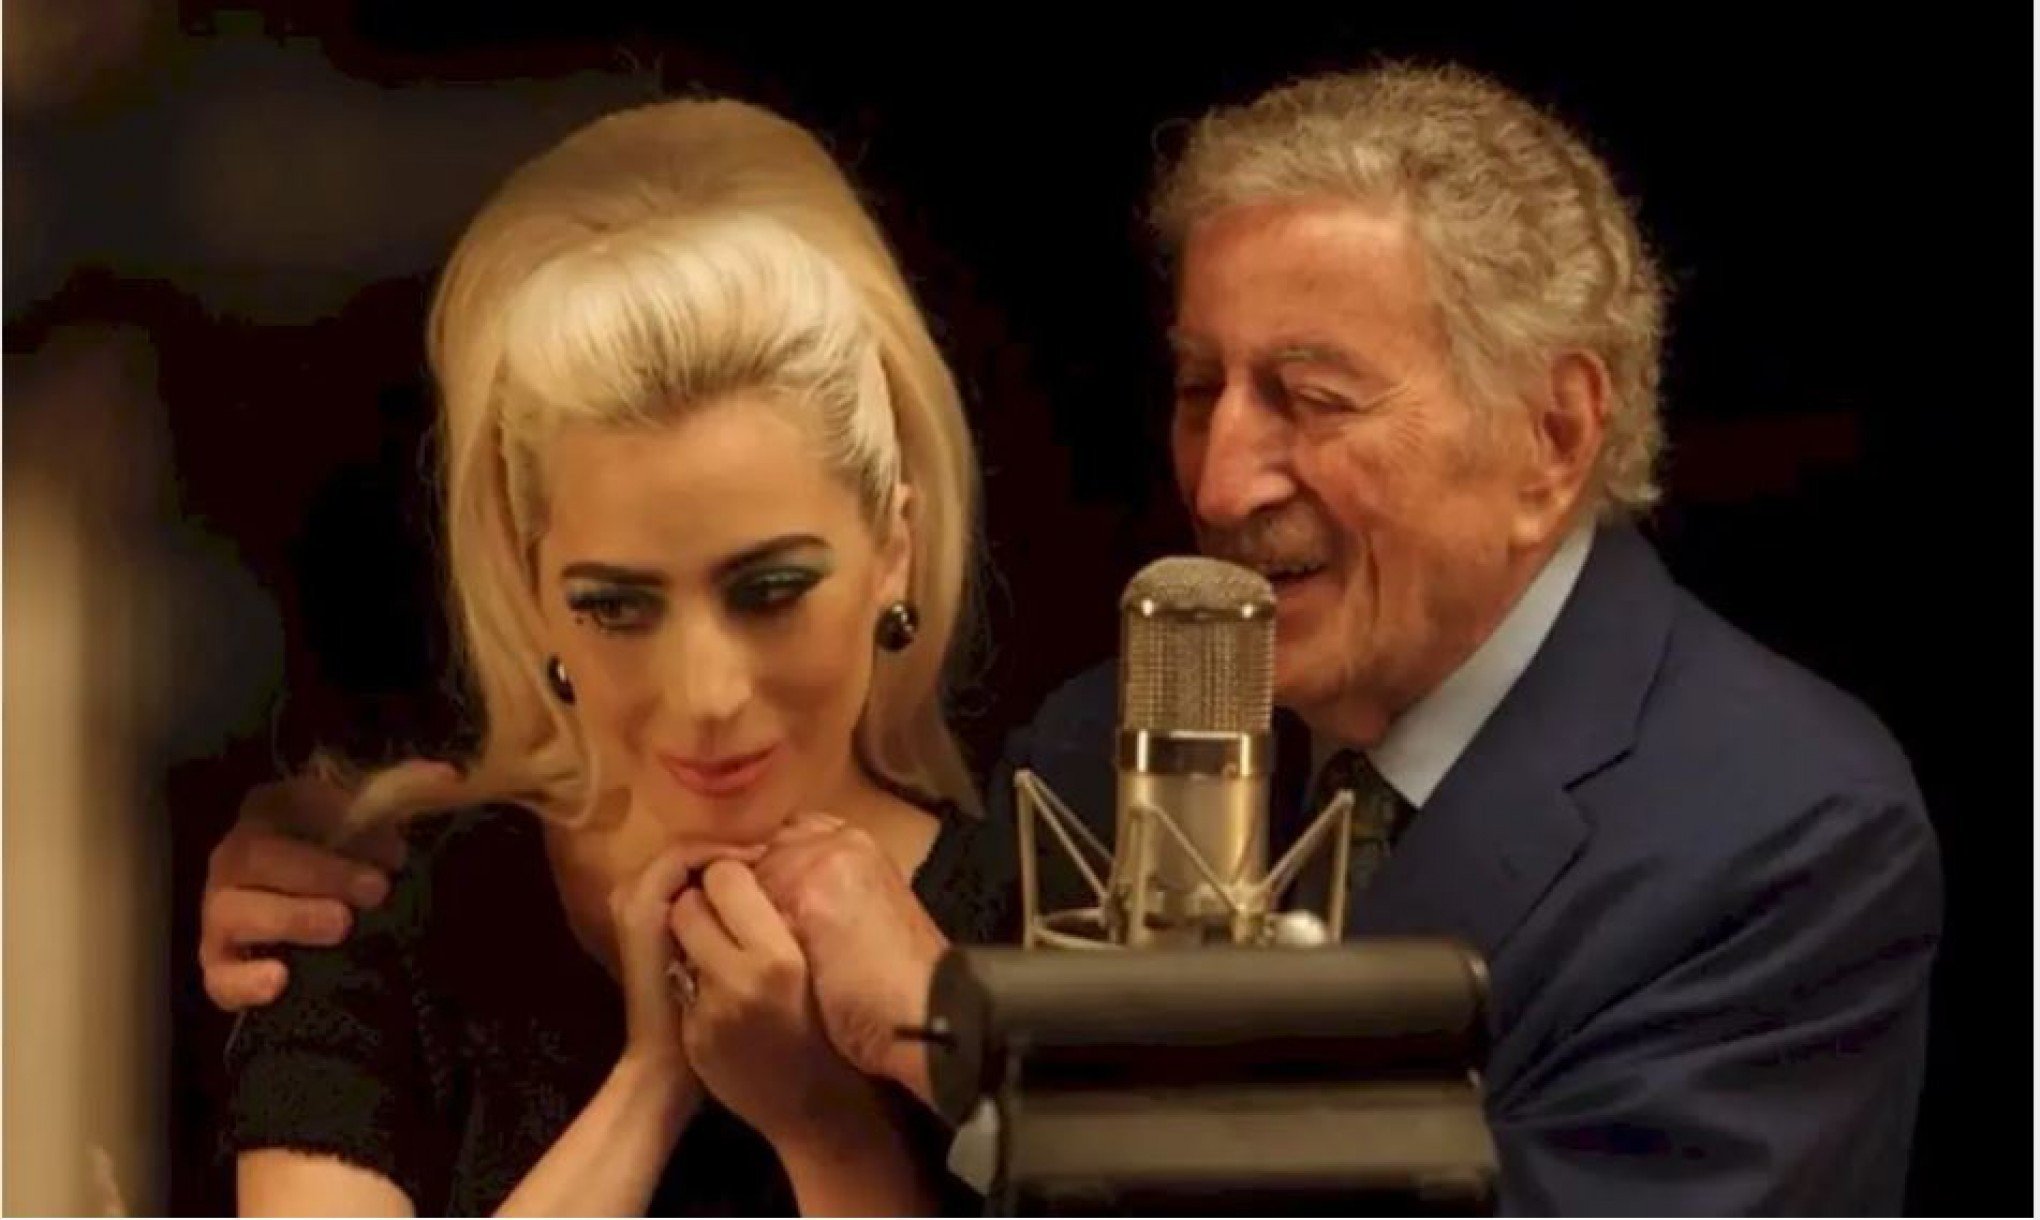 "Nossa relação era muito verdadeira": Lady Gaga compartilha homenagem a Tony Bennett dez dias após morte do cantor